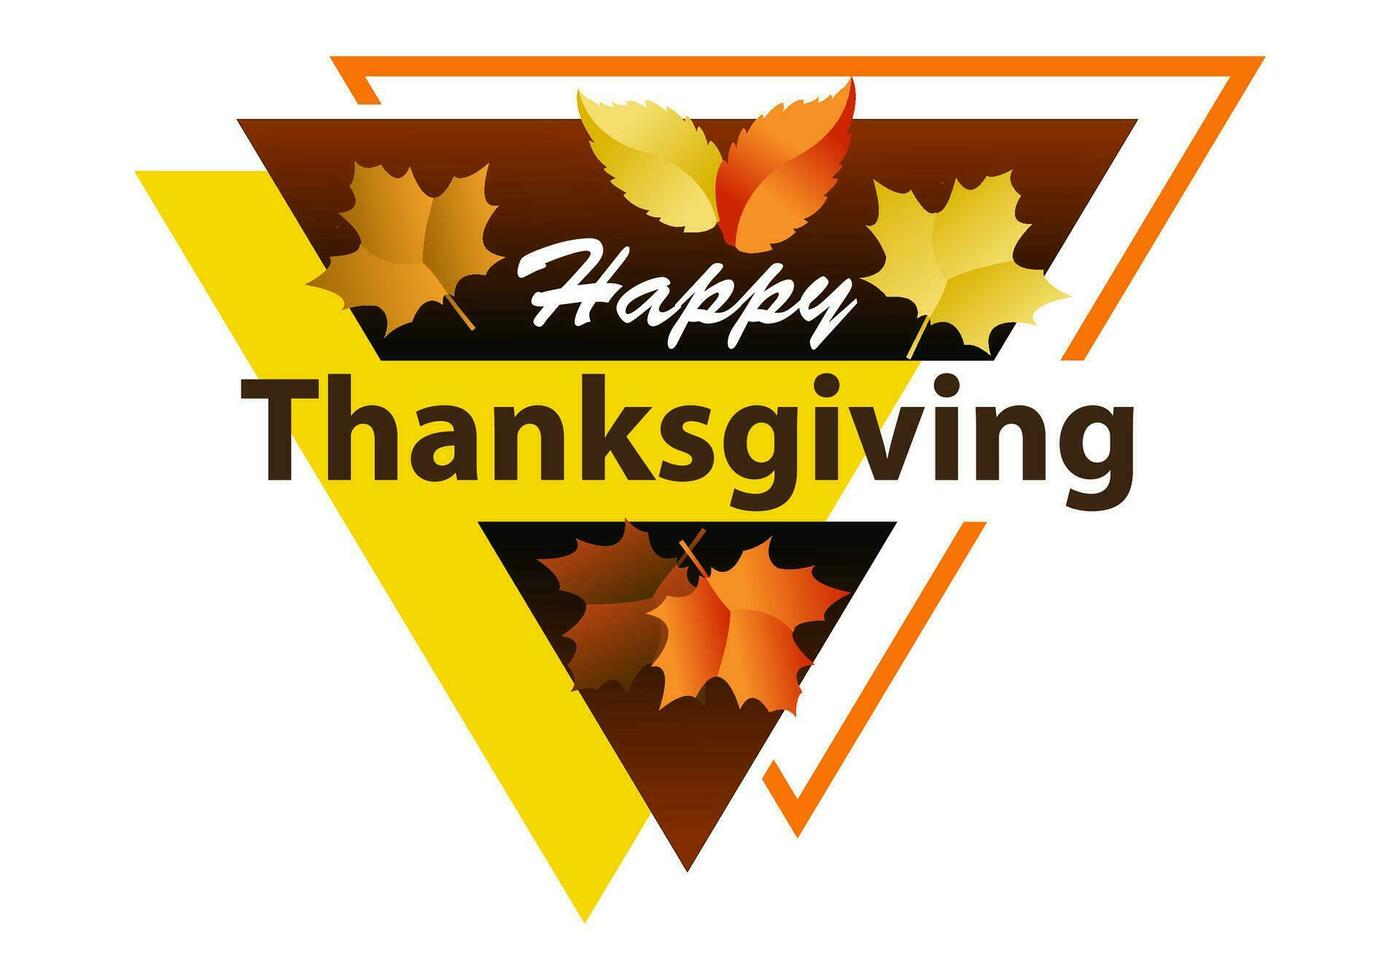 Lycklig tacksägelse dag vektor illustration med höst löv och vit bakgrund